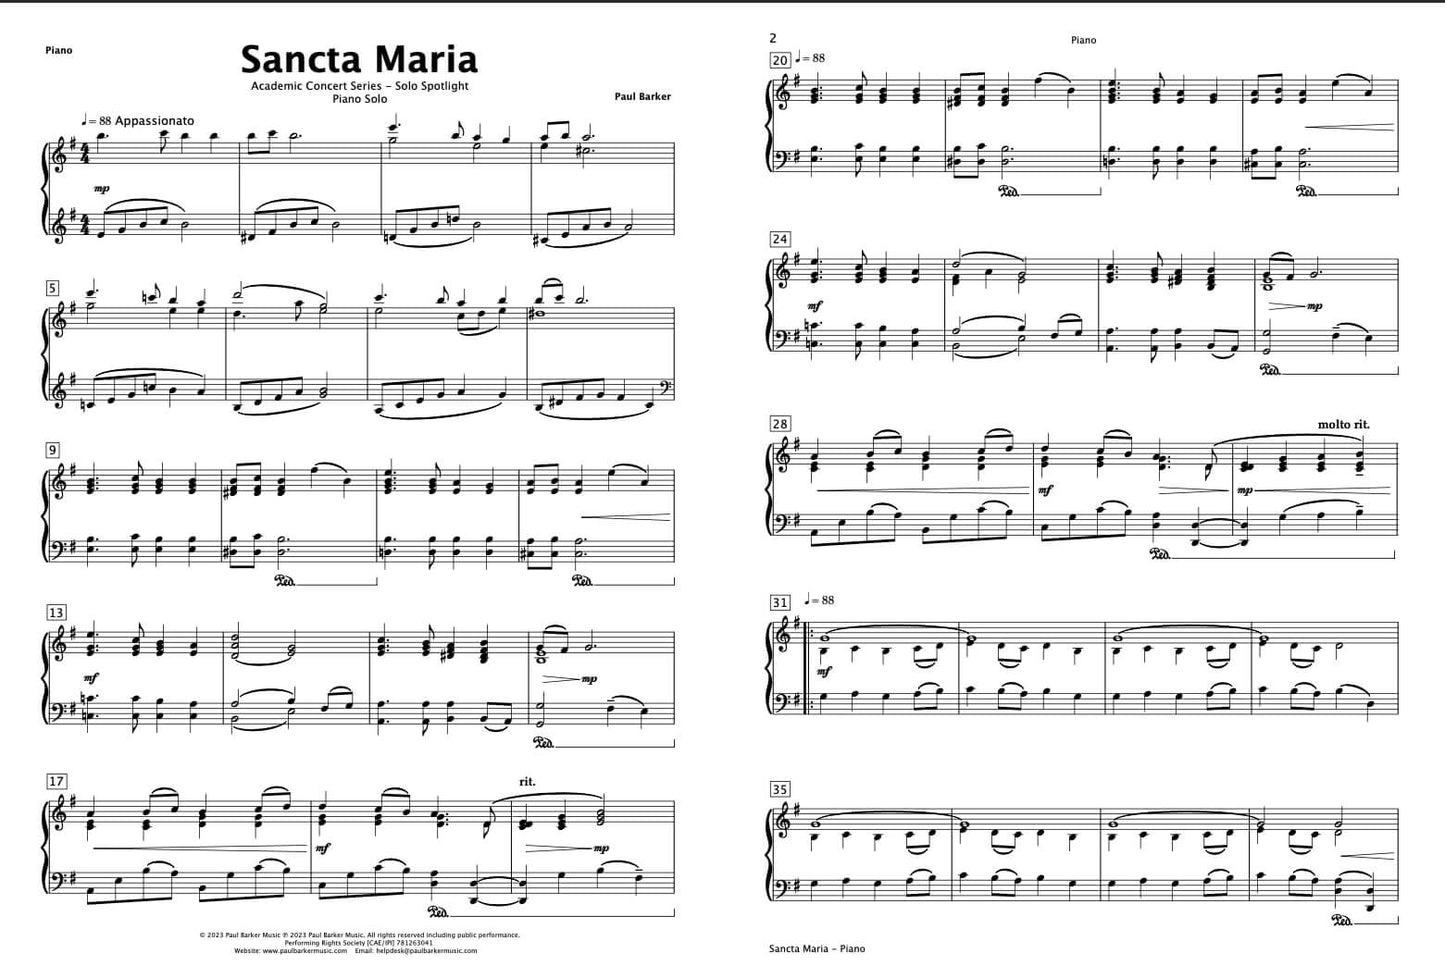 Sancta Maria (Piano)